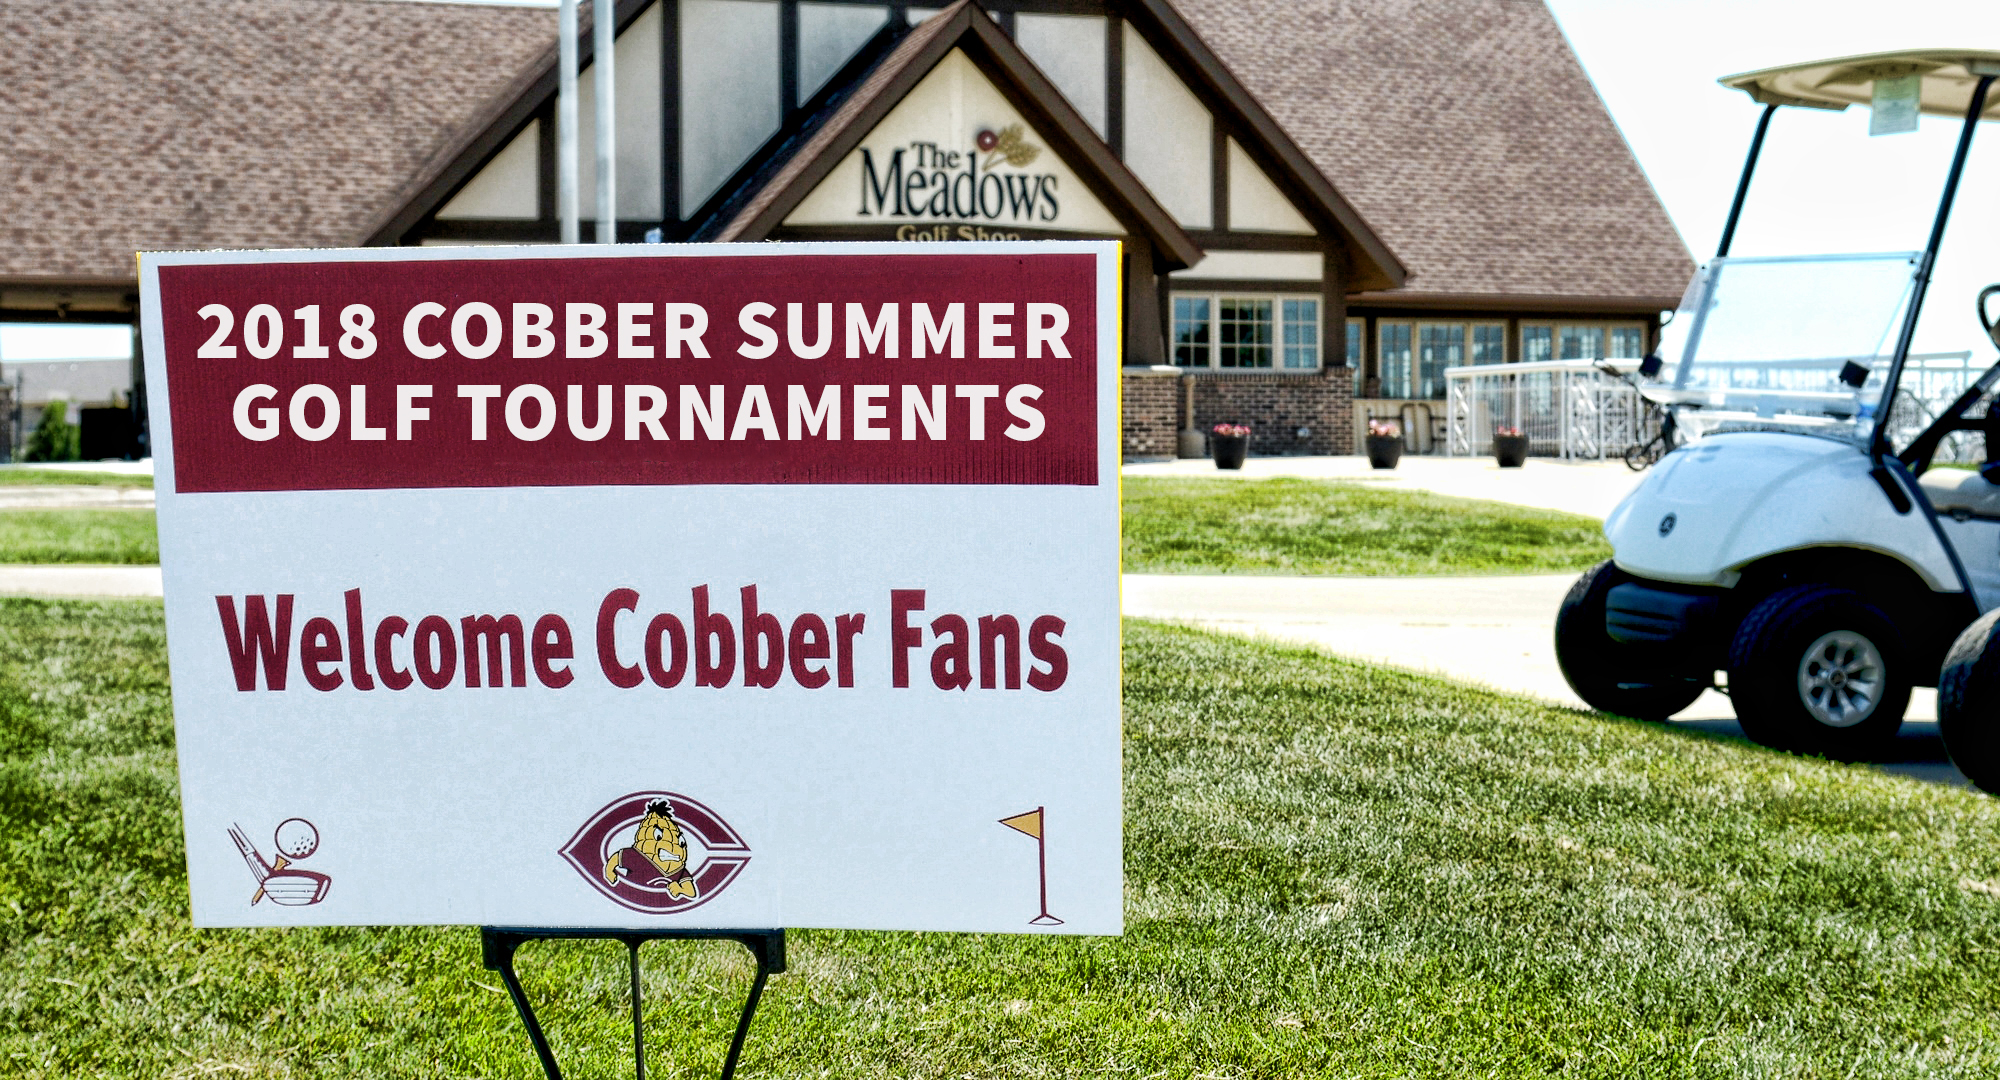 2018 Cobber Summer Golf Tournaments